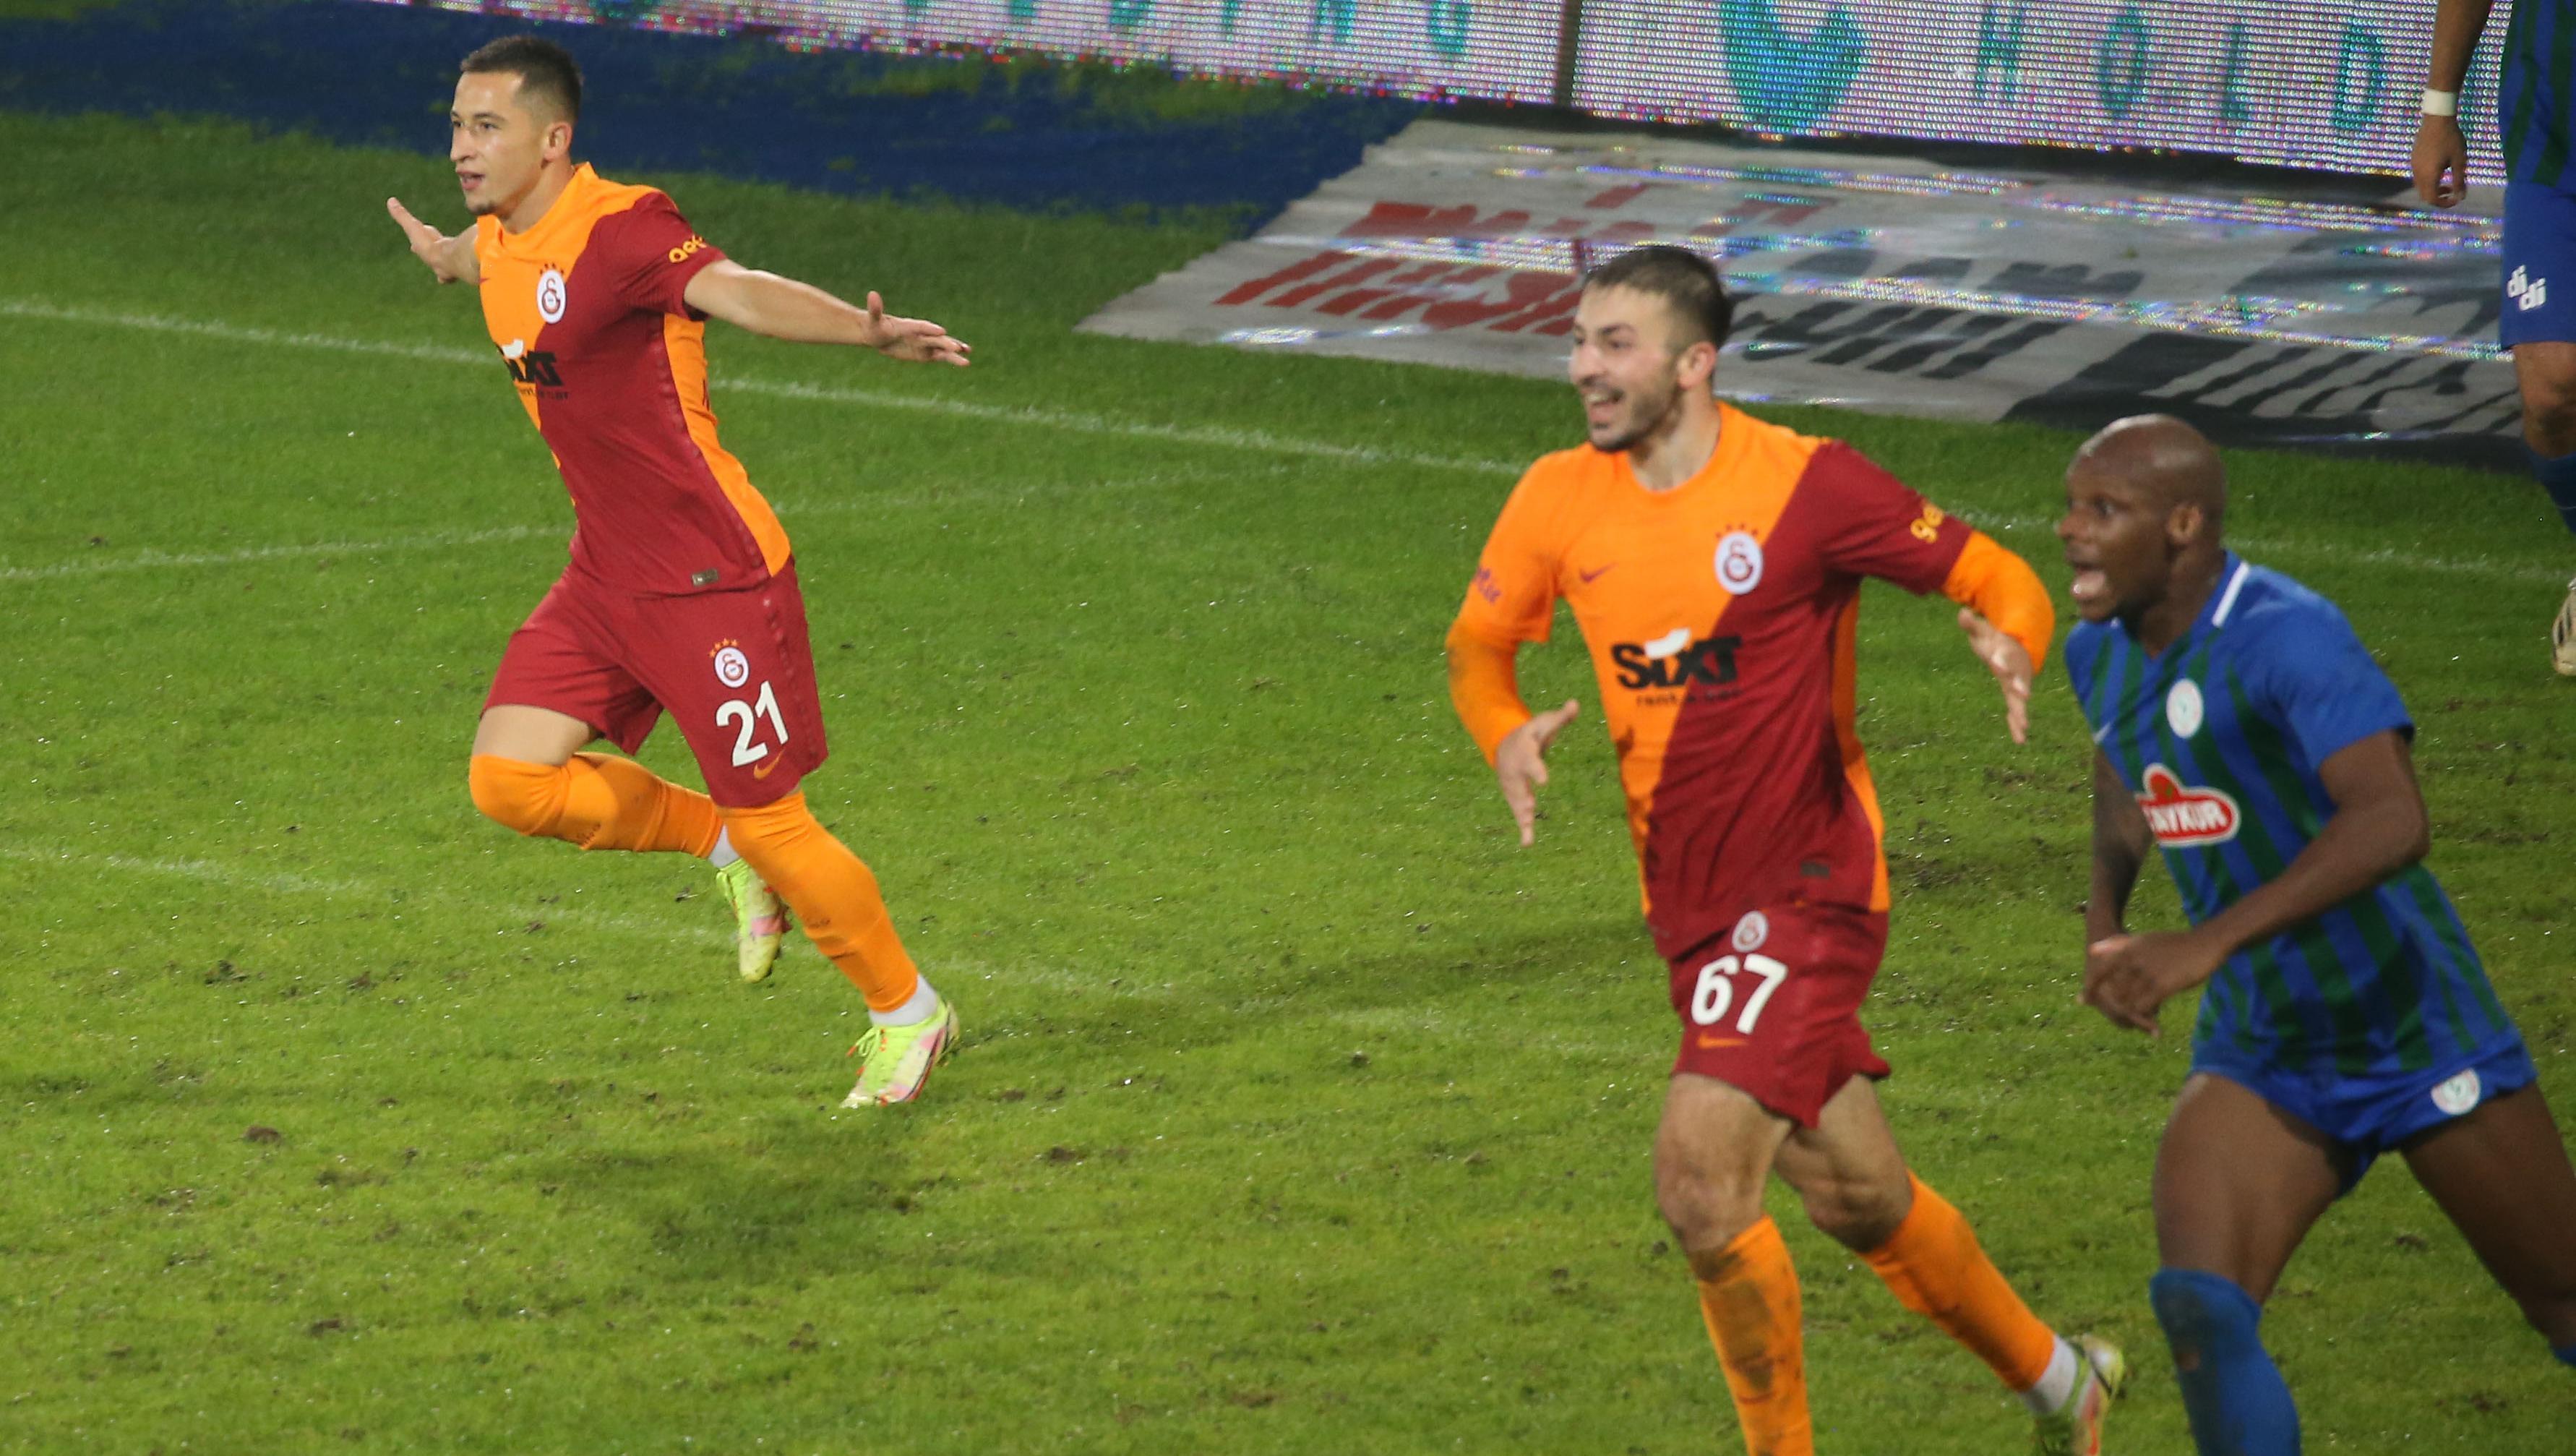 (ÖZET) Çaykur Rizespor - Galatasaray maç sonucu: 2-3